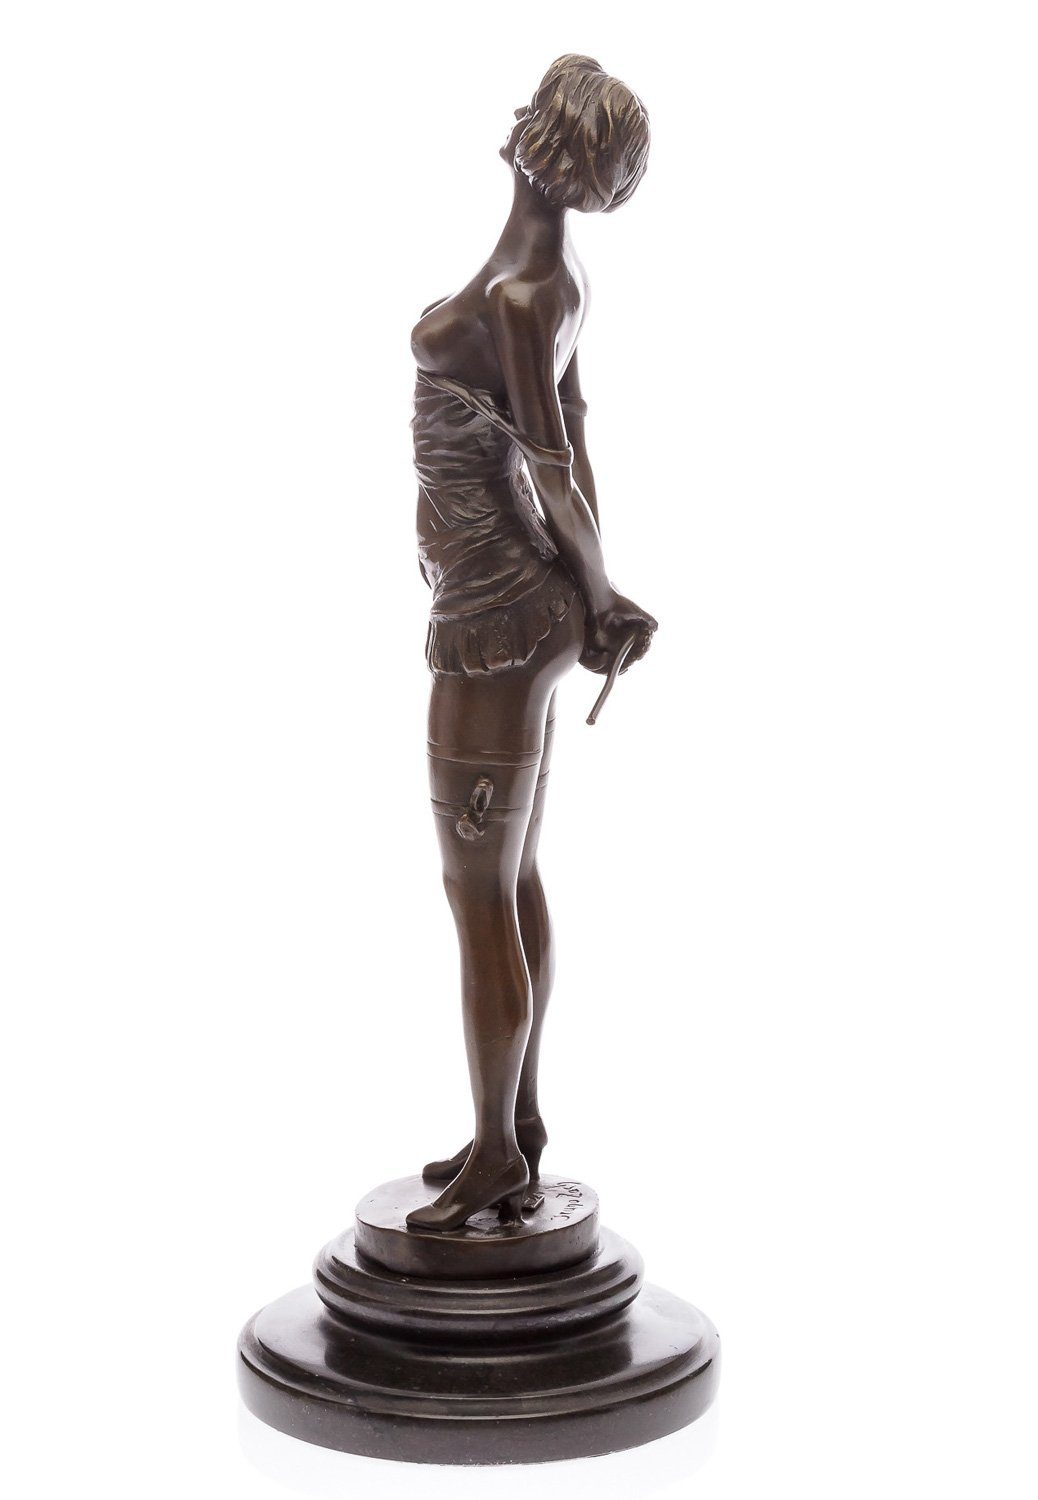 Reitgerte Bruno Zach Skulptur Domi Bronzeskulptur Skulptur Aubaho nach Akt (1891-1945)